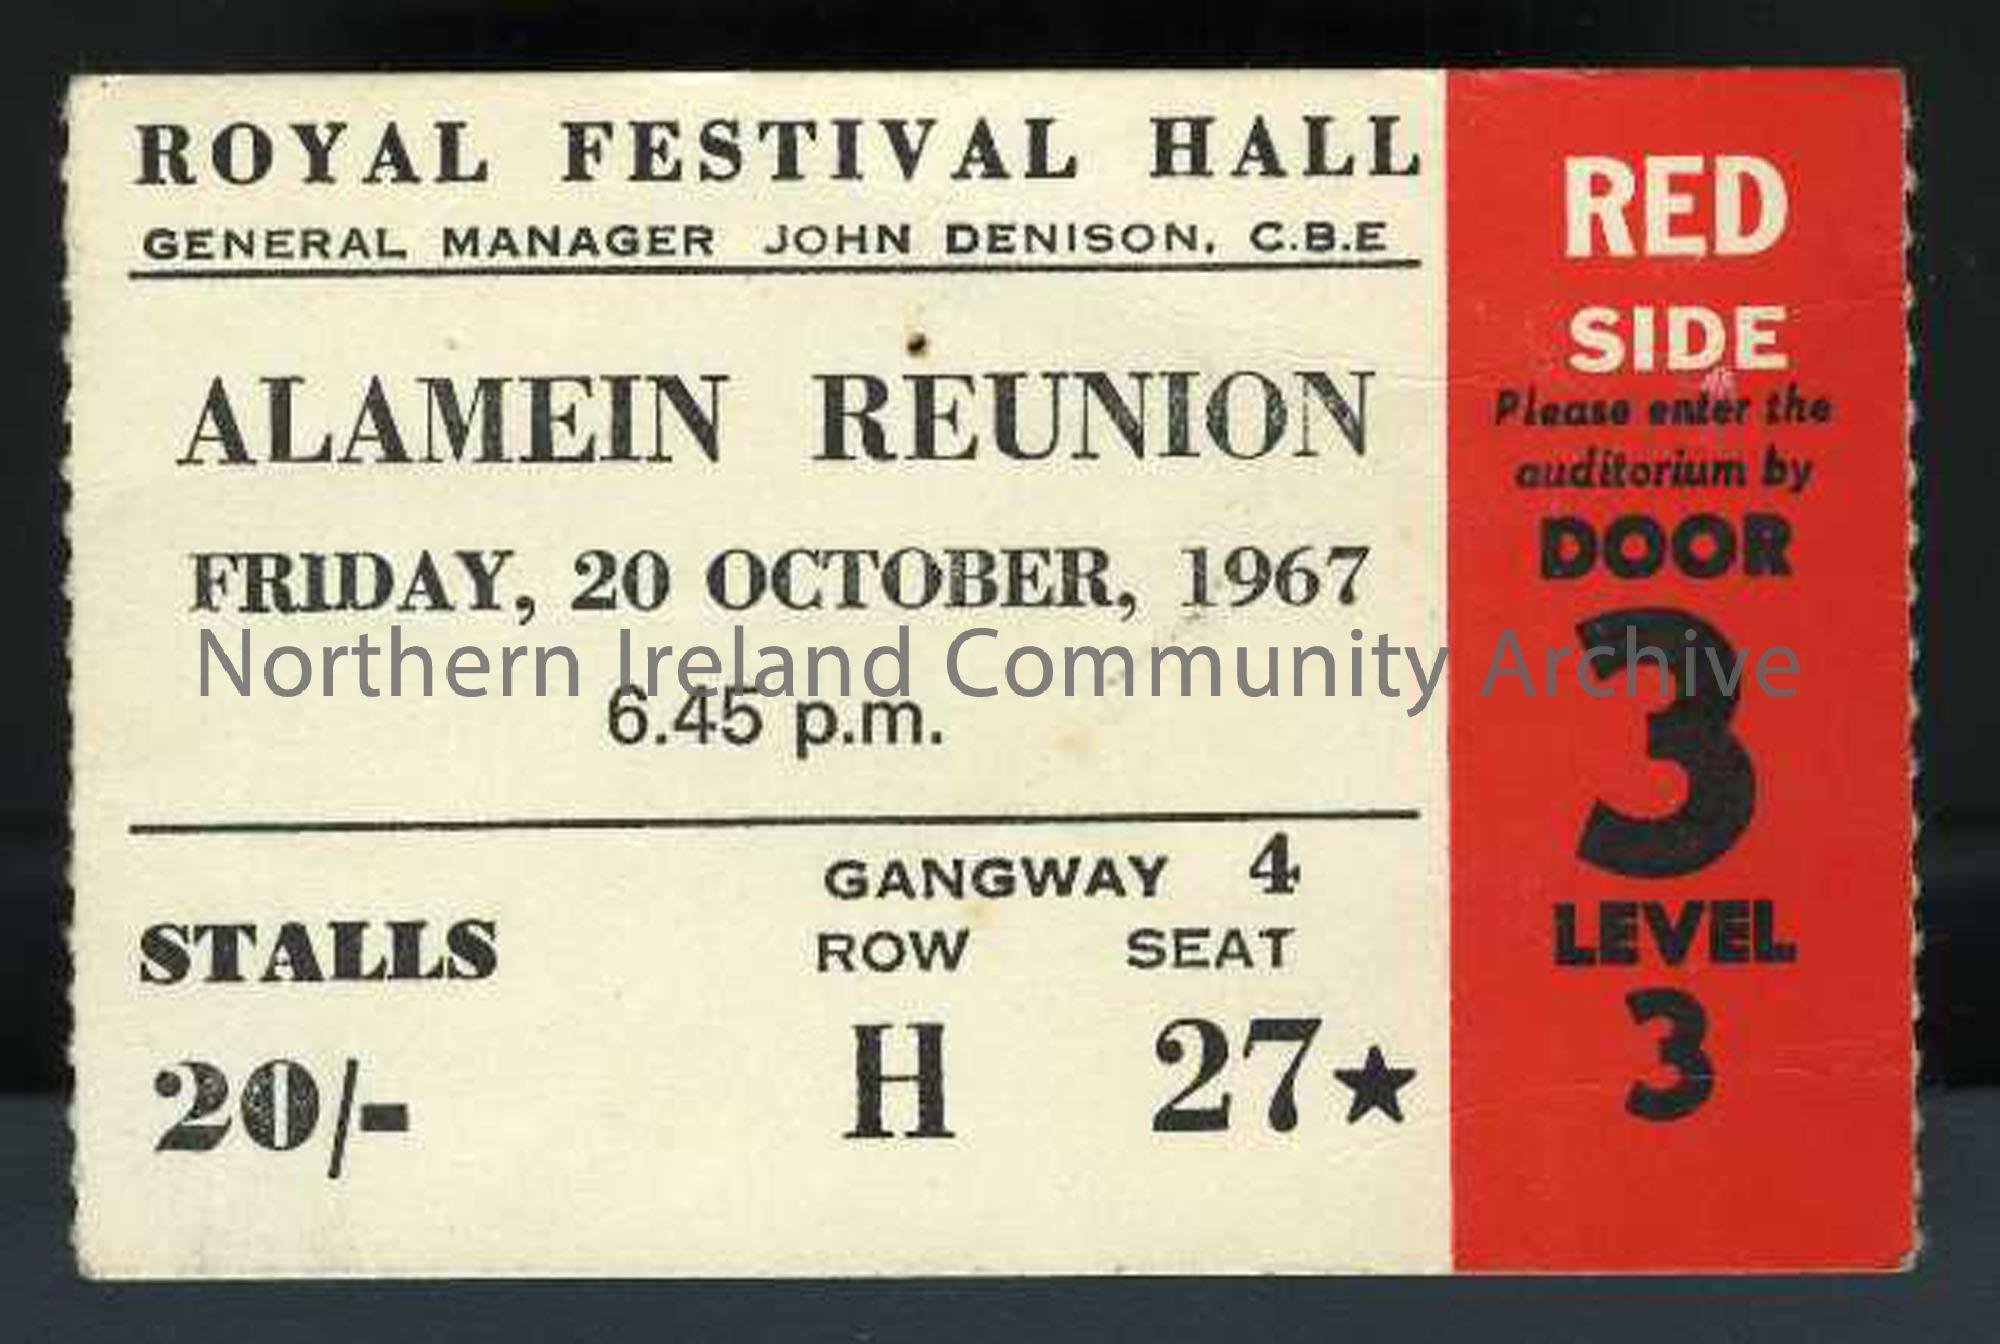 Alamein Reunion at Royal Albert Hall card